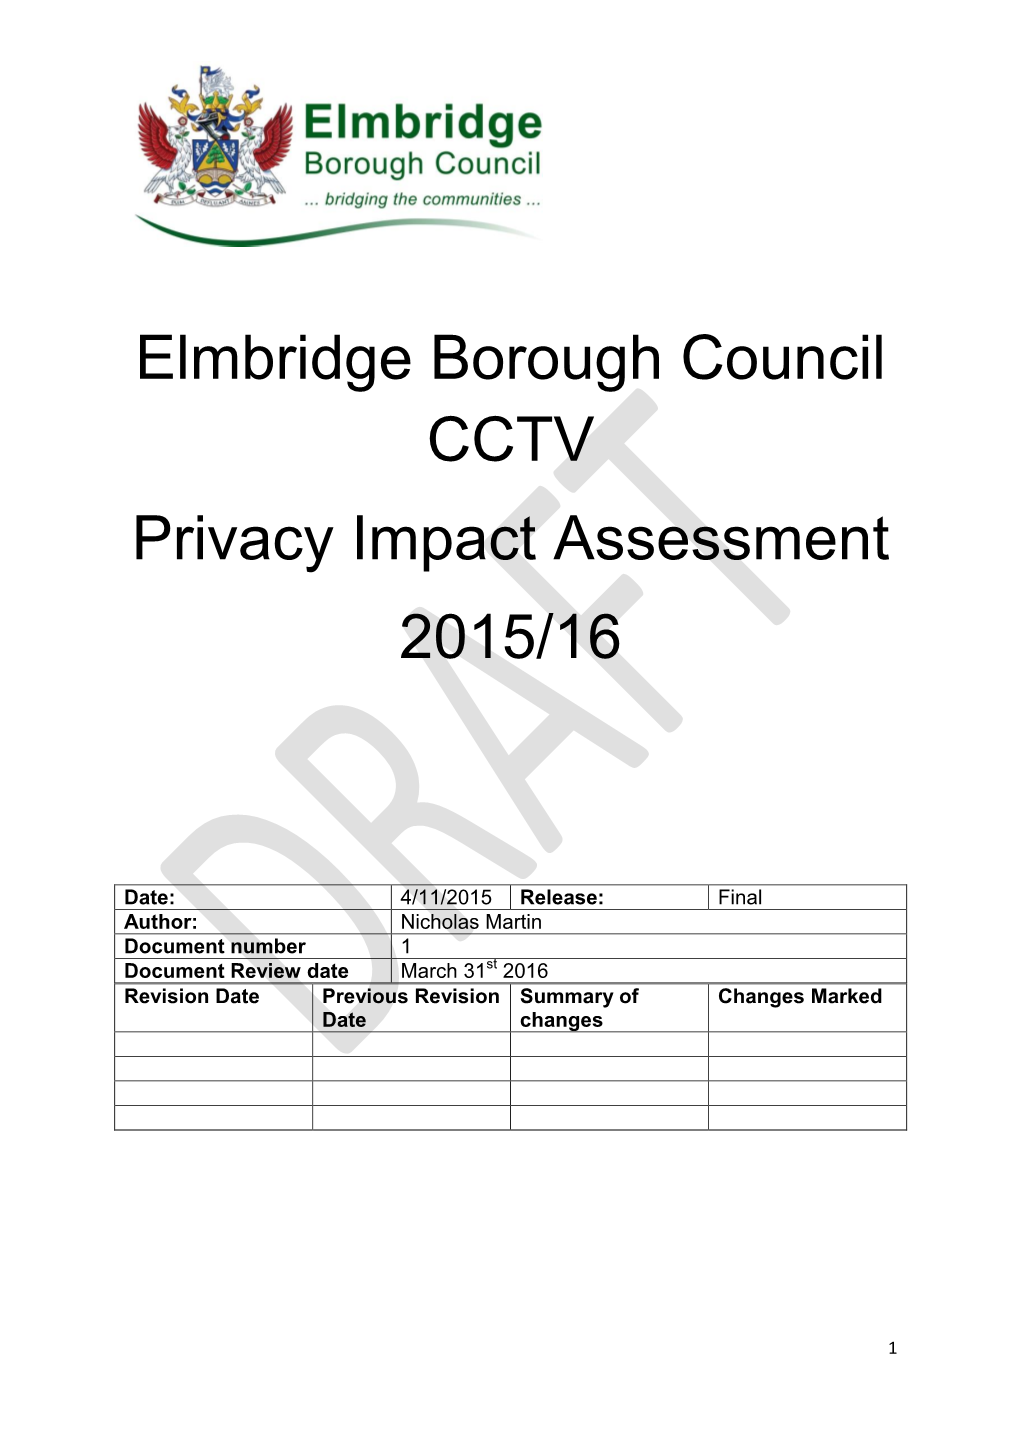 Elmbridge Borough Council CCTV Privacy Impact Assessment 2015/16